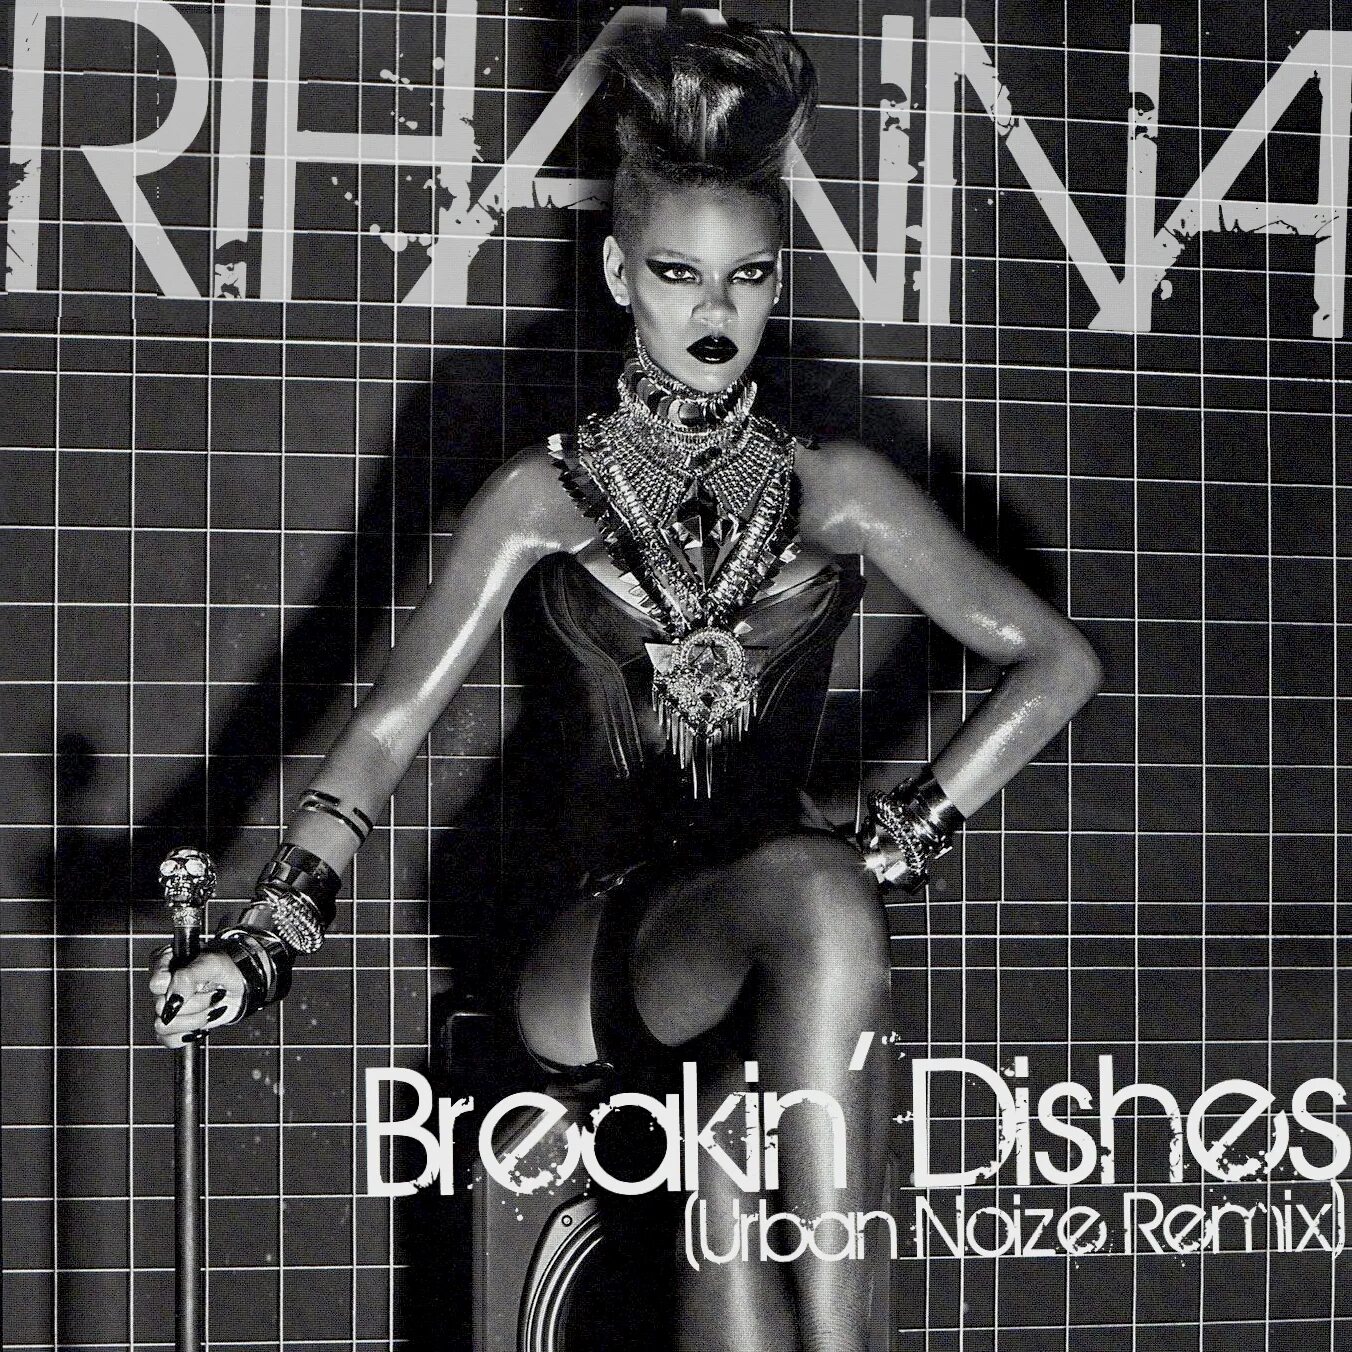 Rihanna - Breakin' dishes. Breakin dishes Rihanna текст. Rihanna Breaking dishes про что песня. Песня breaking dishes